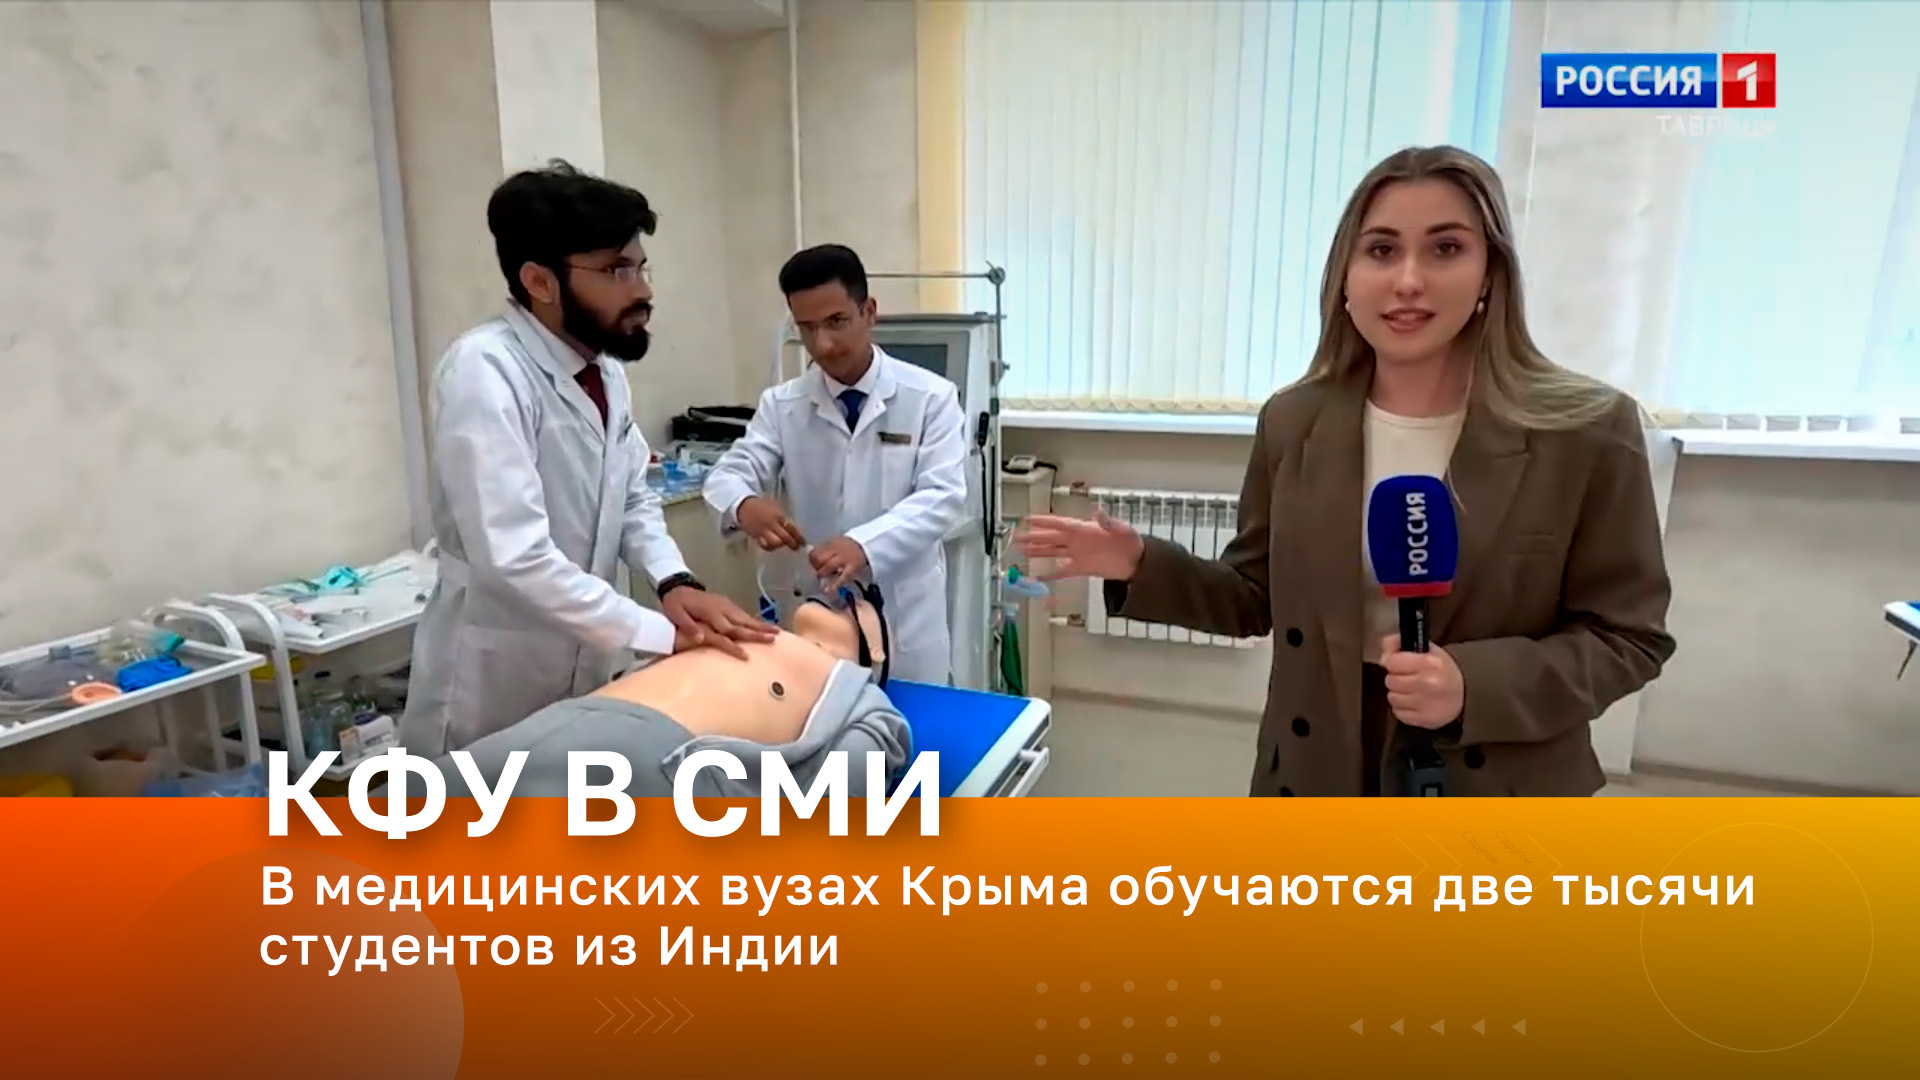 В медицинских вузах Крыма обучаются две тысячи студентов из Индии